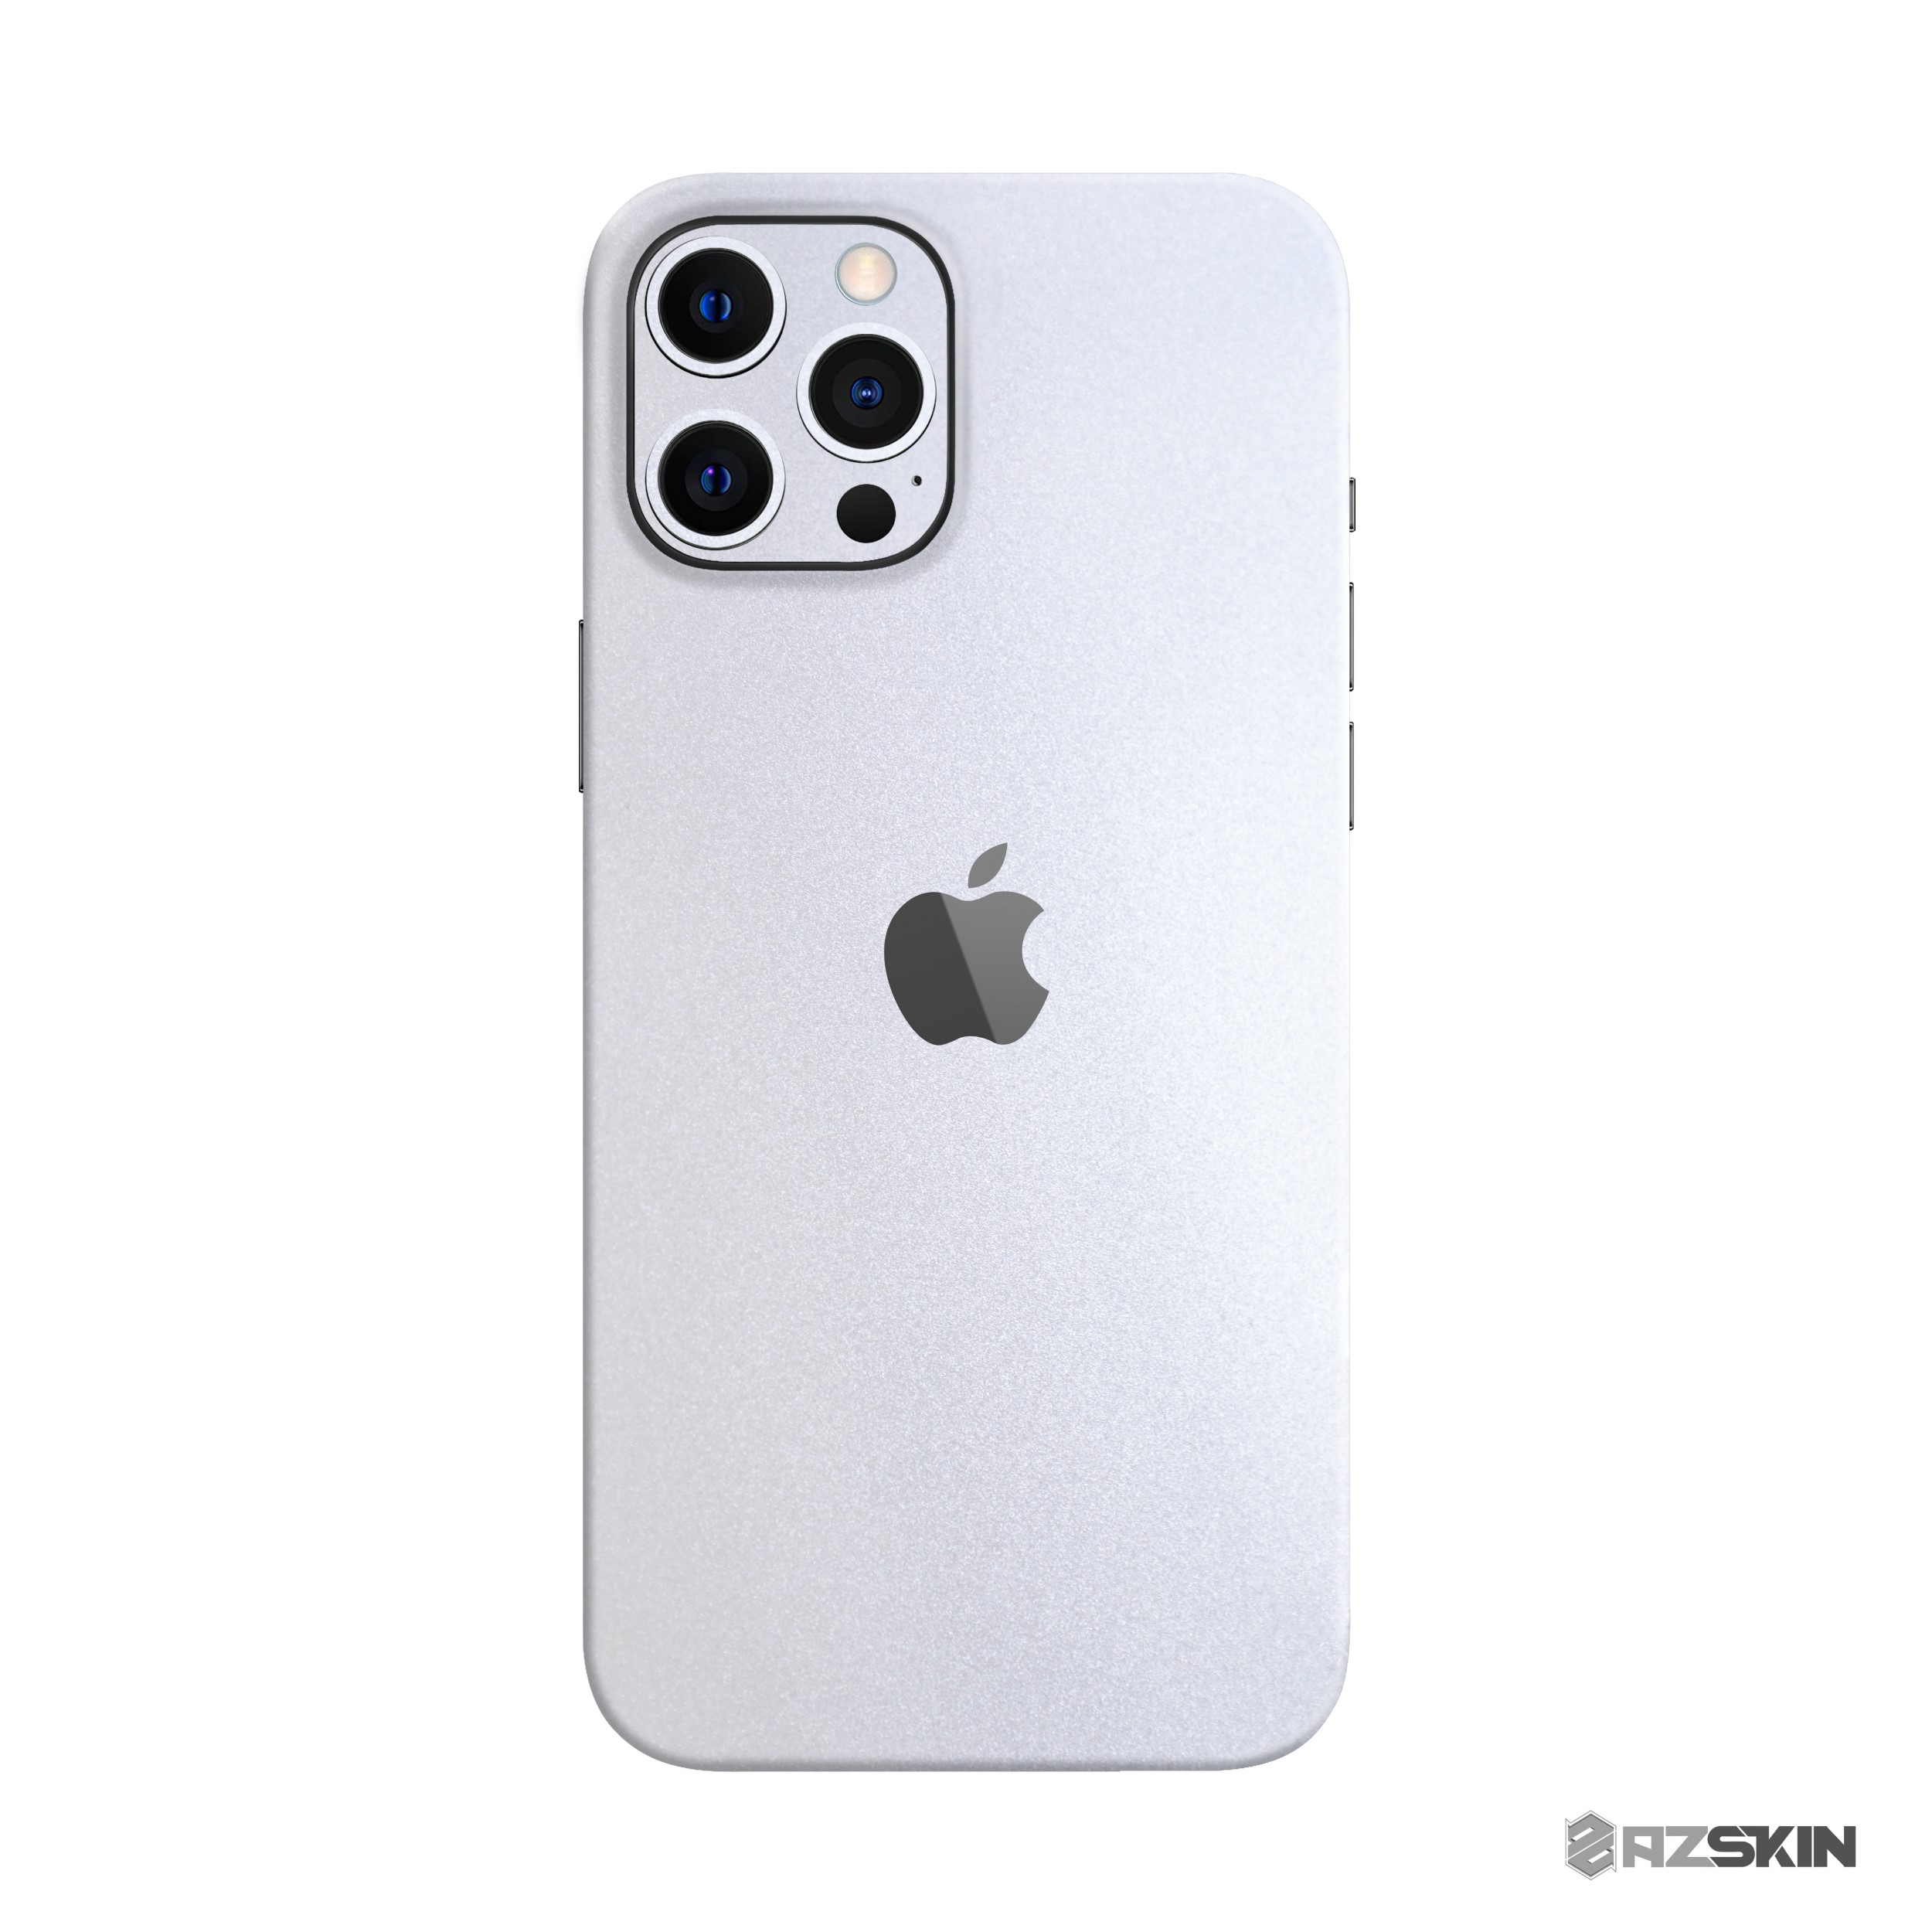 Bao bọc iPhone 12 của bạn trong lớp vỏ Skin 3M màu trắng đẹp mắt. Sản phẩm này có thiết kế tinh xảo và chất liệu cao cấp, bảo vệ thiết bị của bạn khỏi va đập, trầy sướt, và ánh bức của ánh nắng. Tận hưởng một thiết bị iPhone mới như chưa từng có và đem lại nhiều niềm vui.